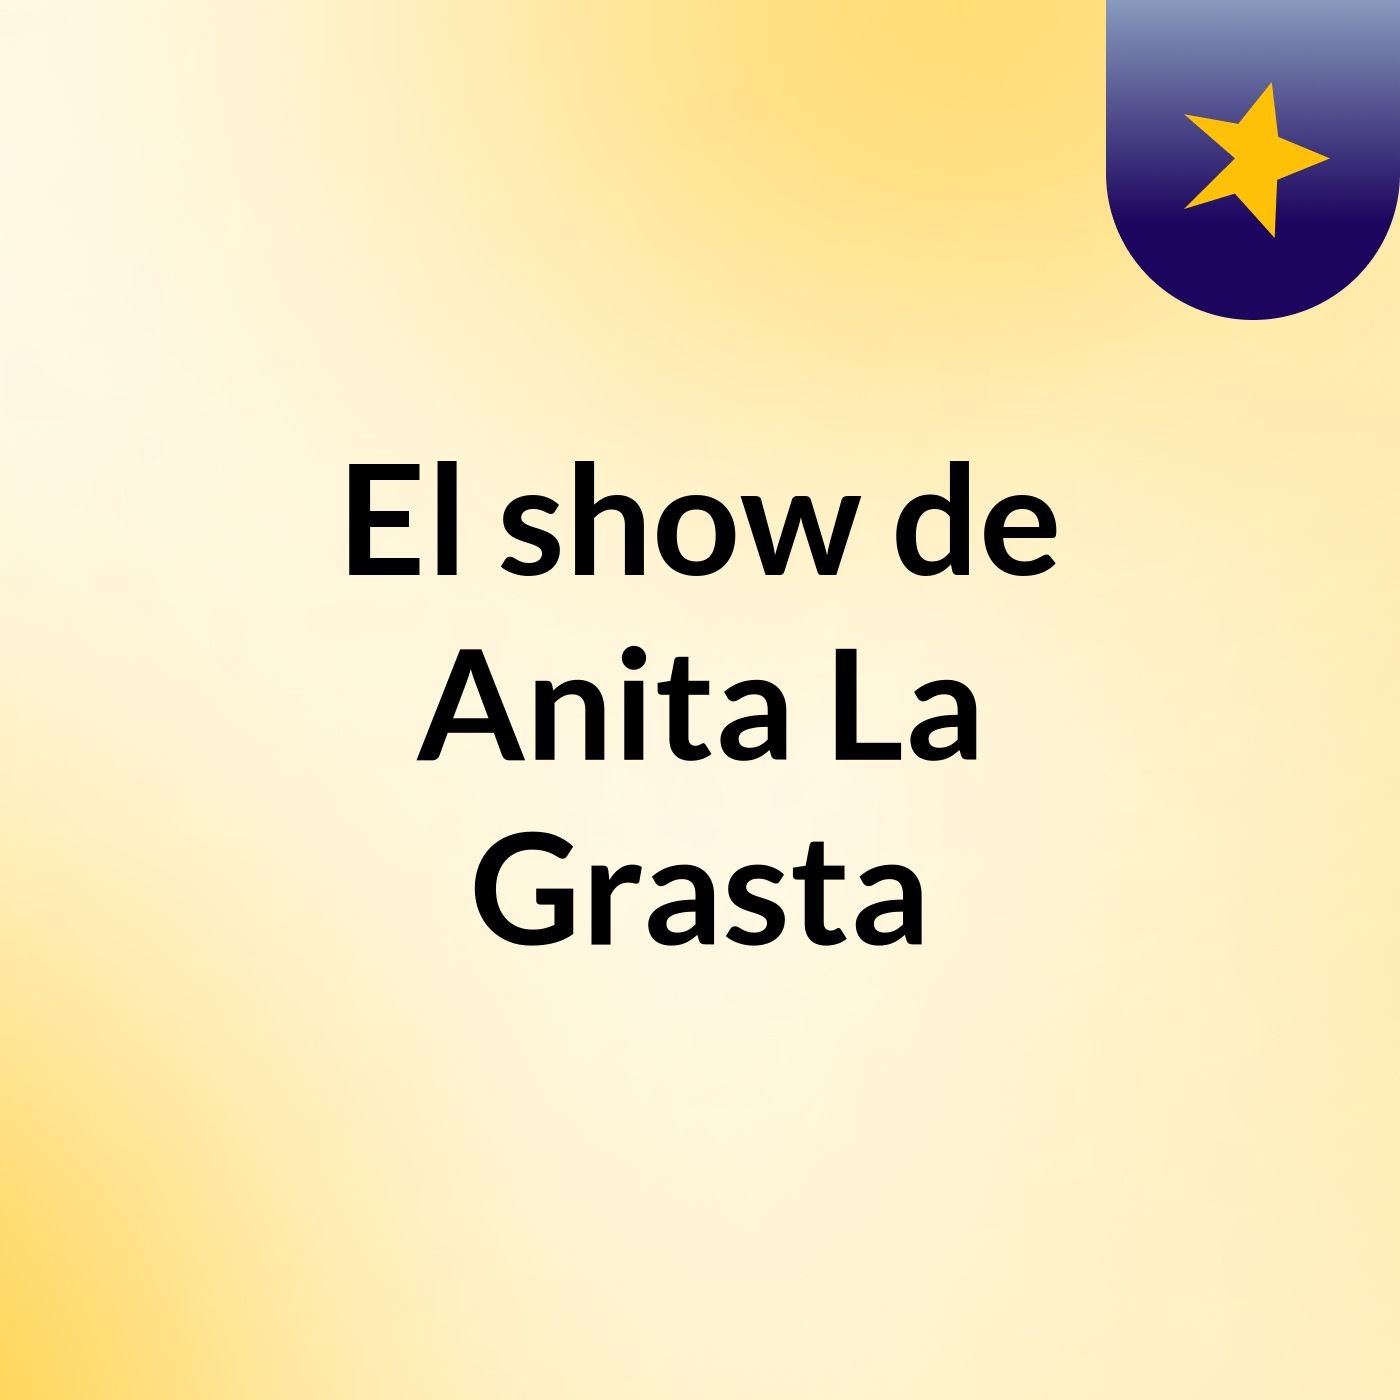 El show de Anita La Grasta